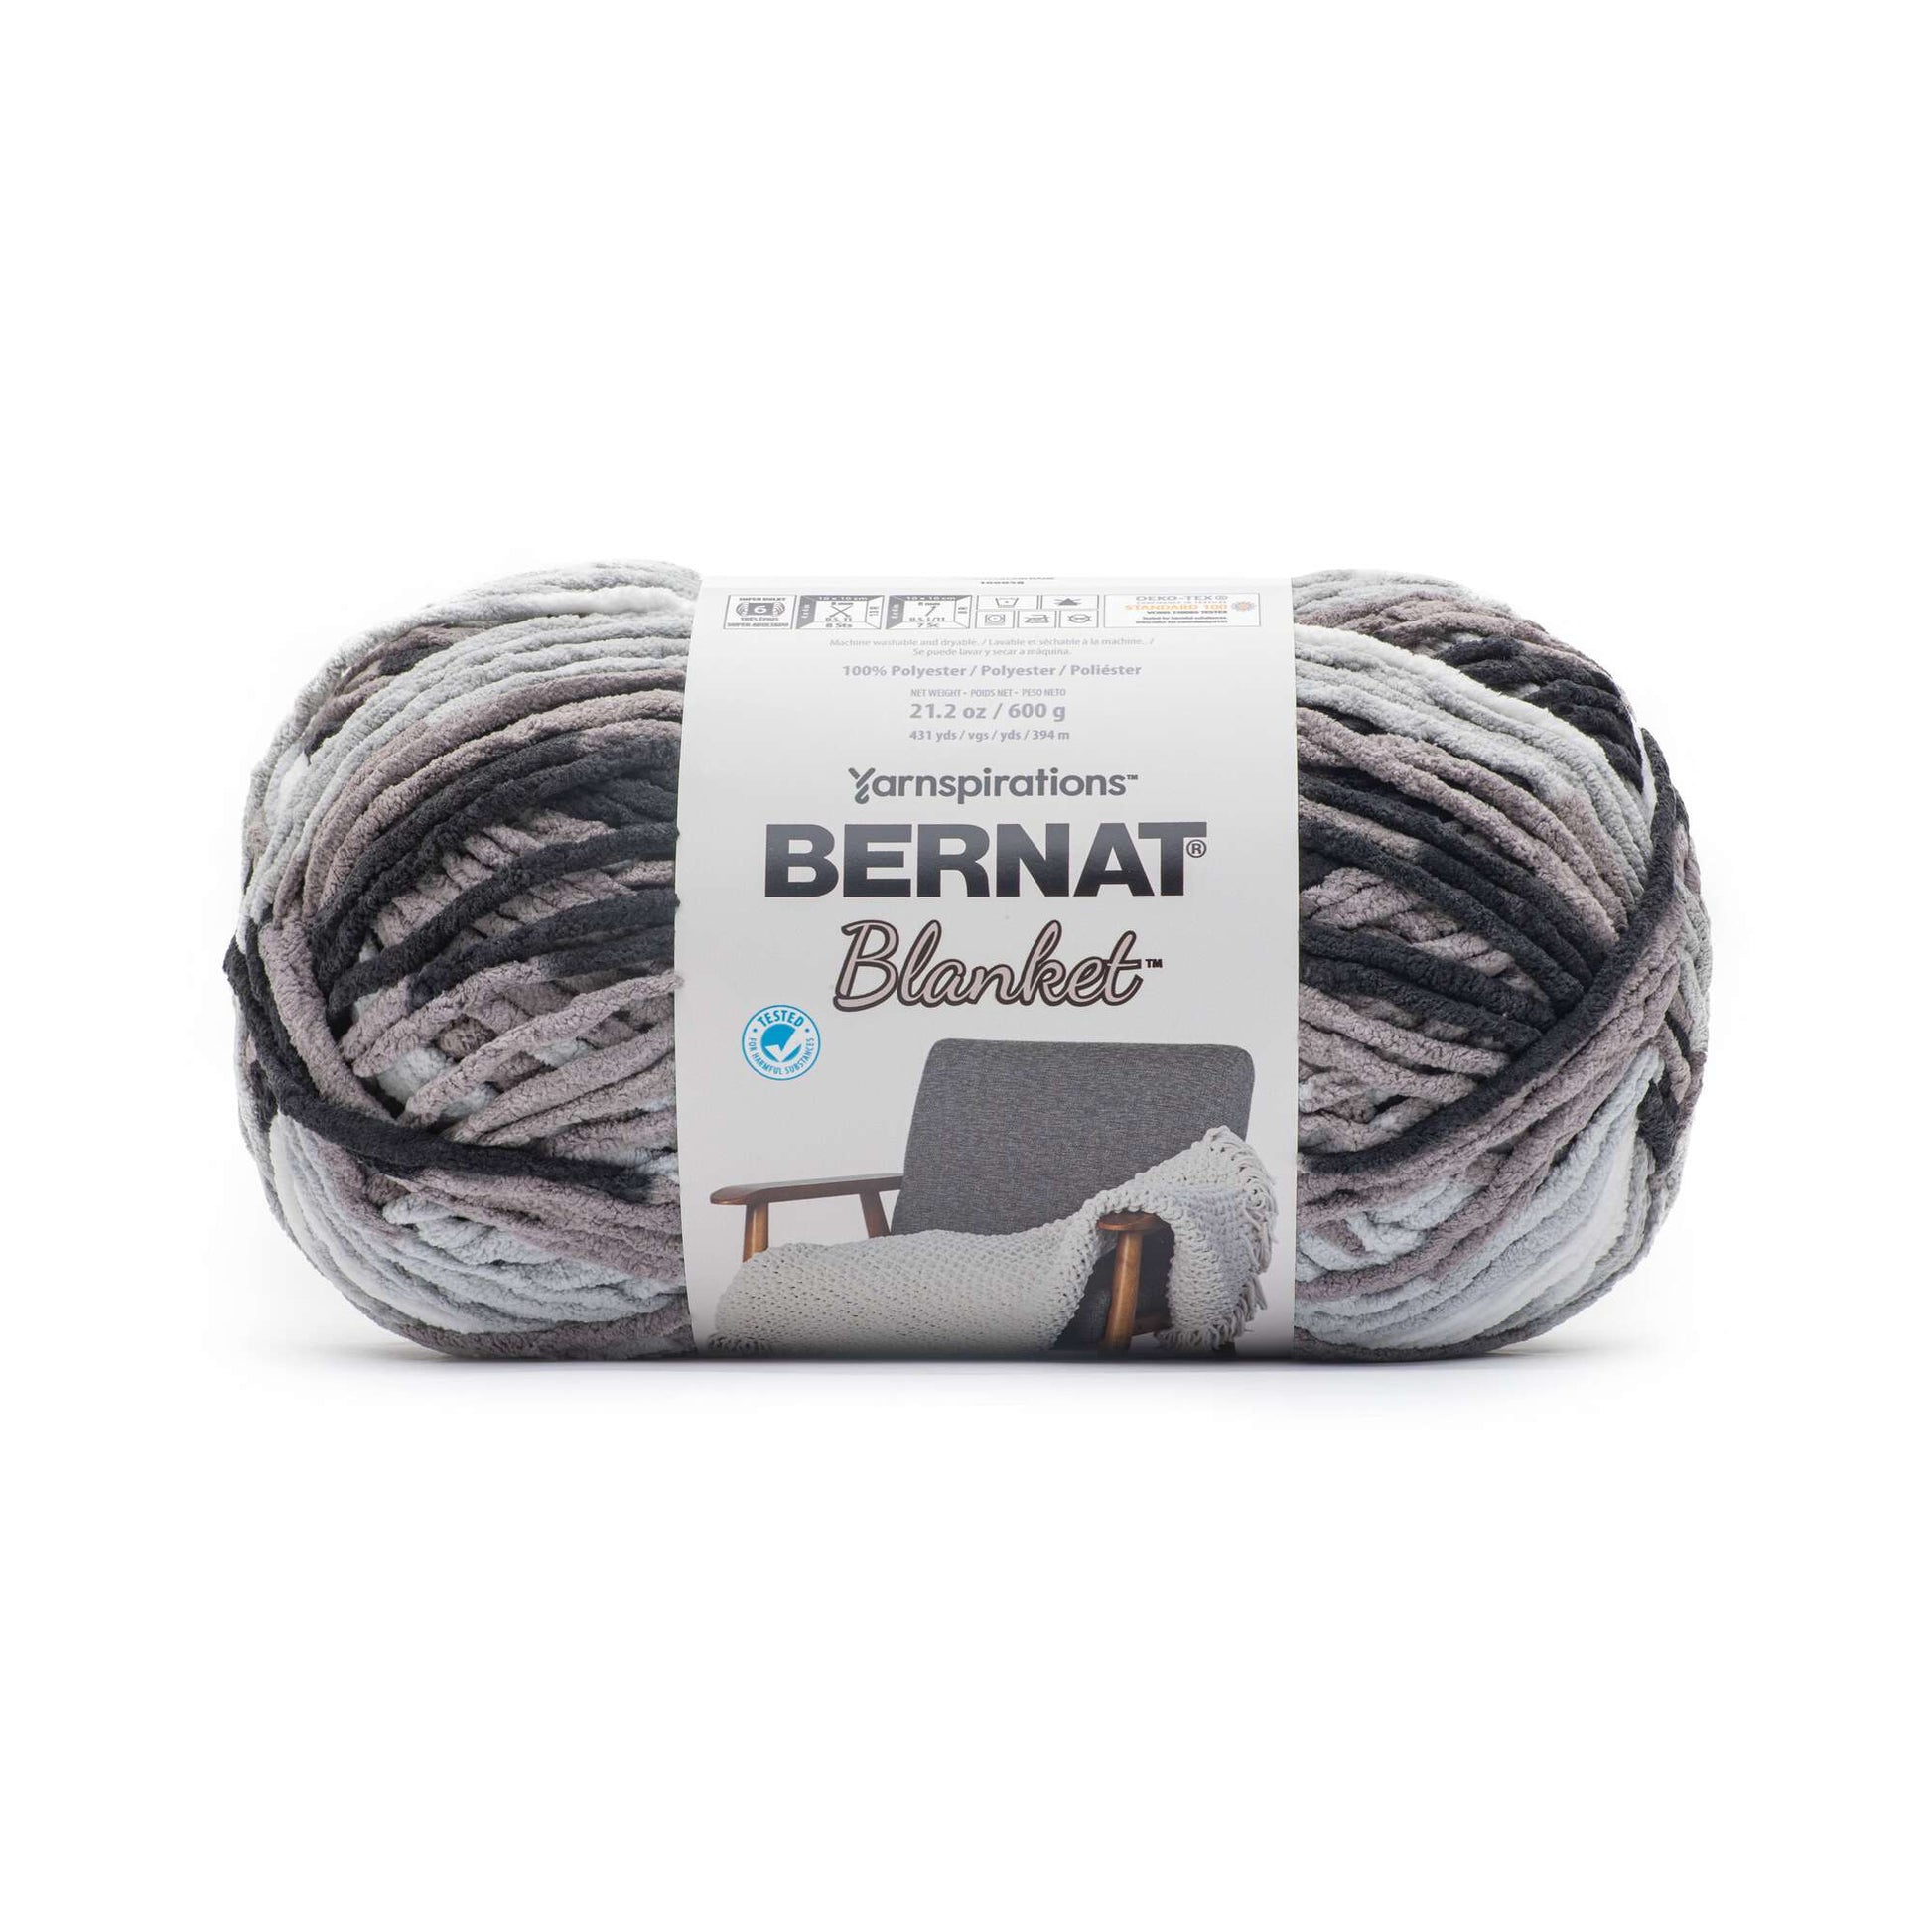 Bernat Blanket Yarn (600g/21.2oz) - Discontinued Shades